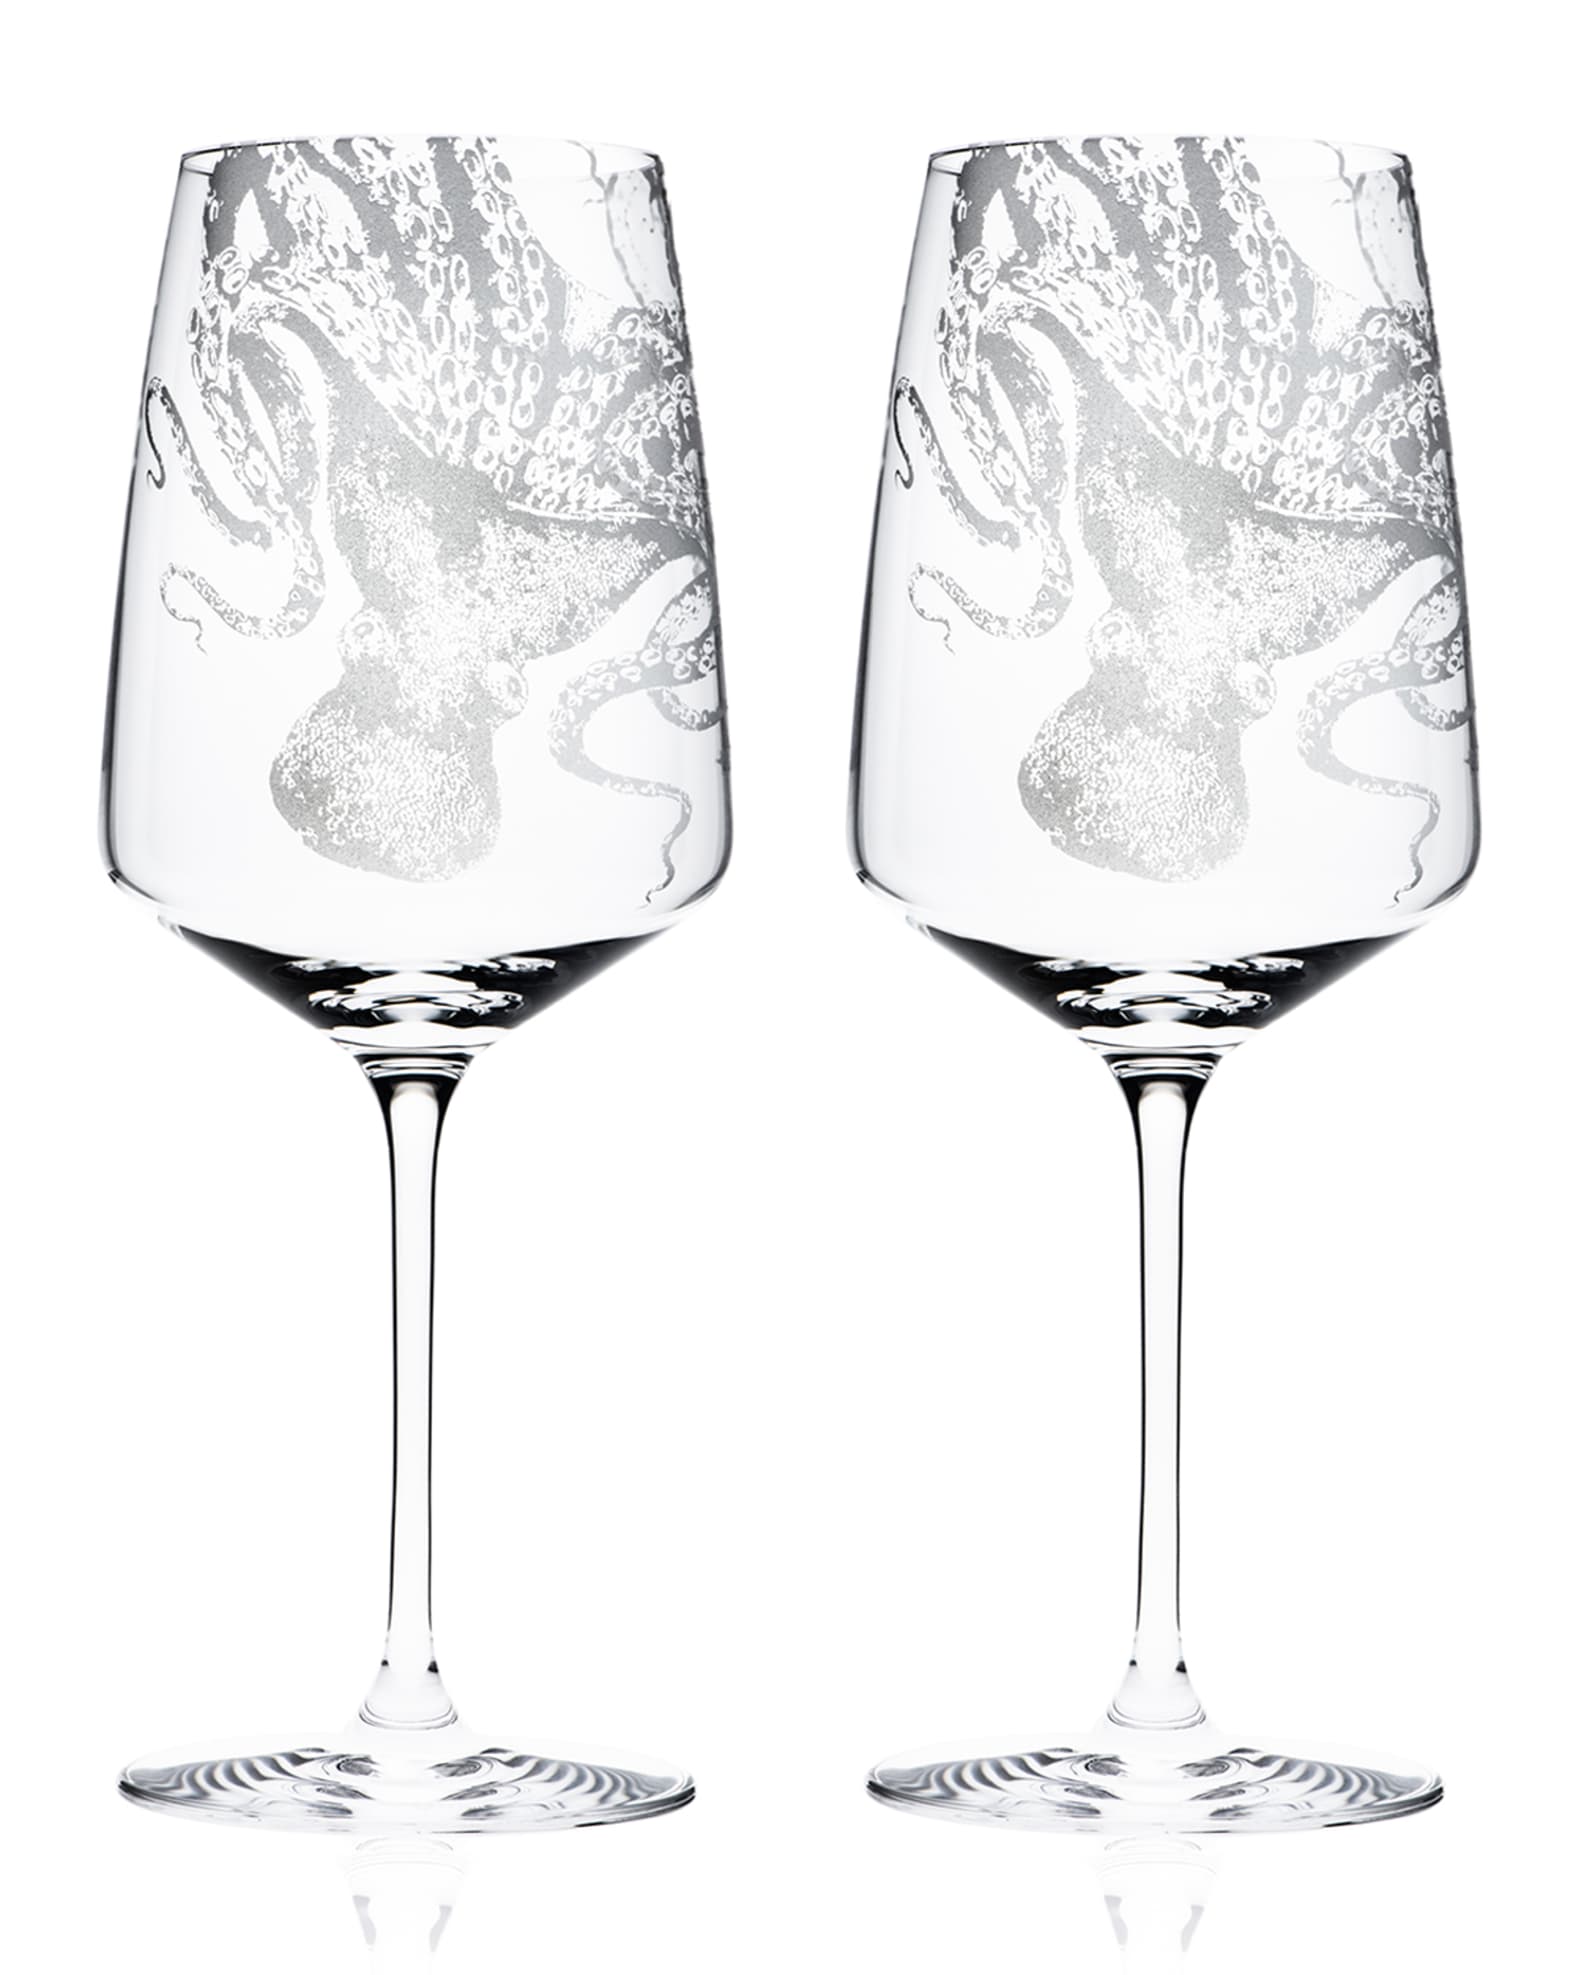 Caskata Marrakech Martini Glasses Set of 2